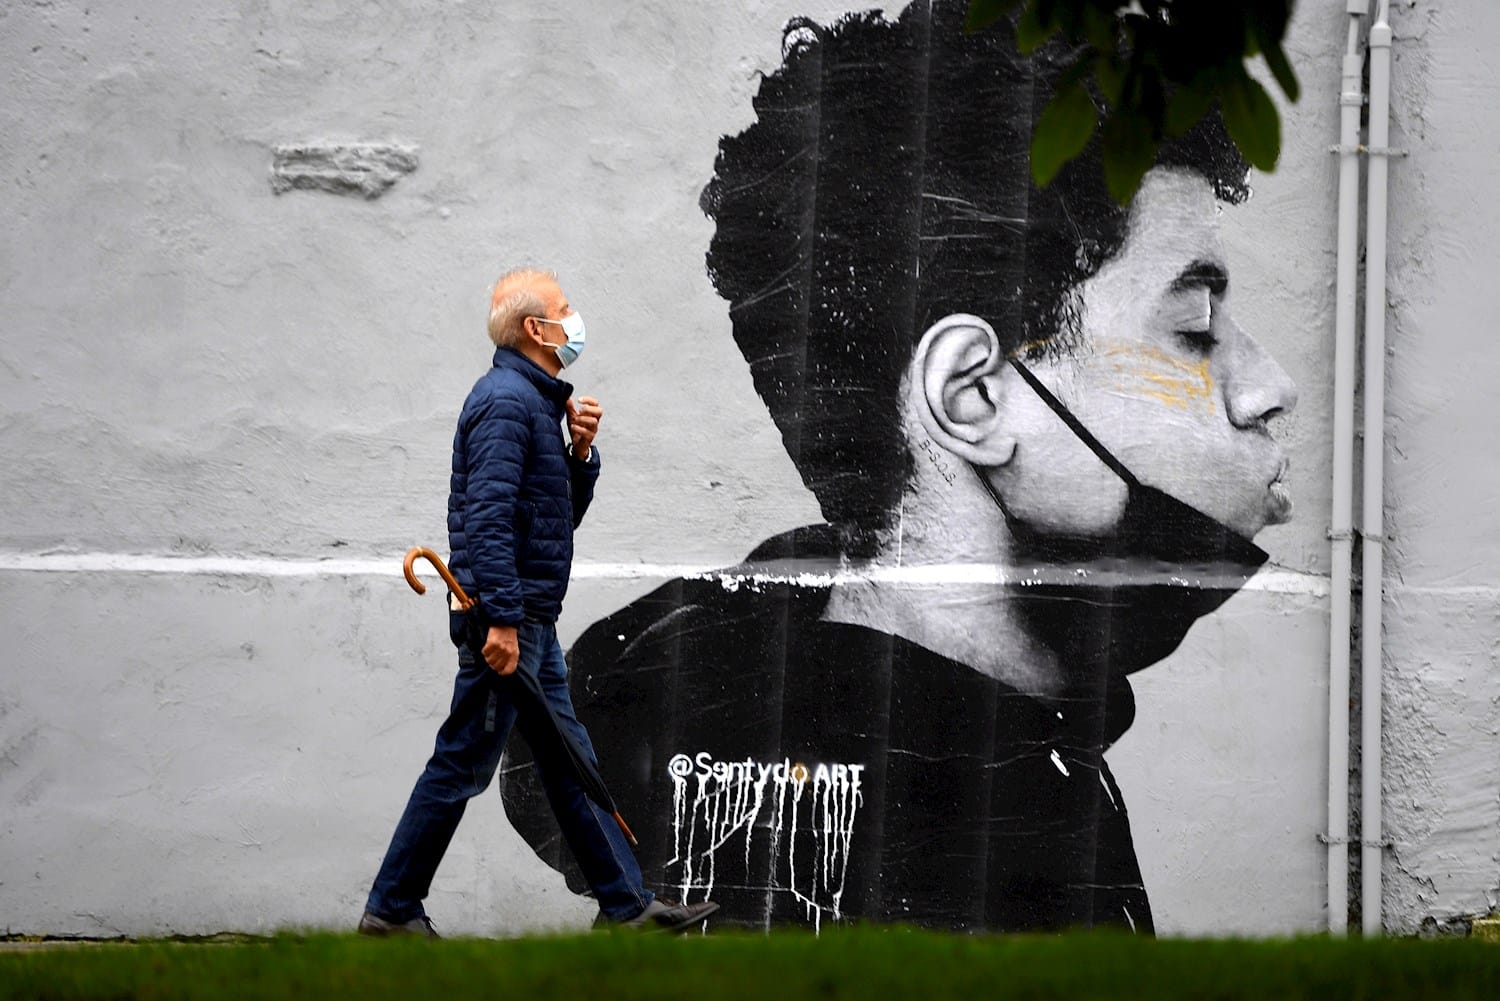 Un hombre camina con mascarilla el primer día sin mascarilla obligatoria en exteriores. Lo hace delante de una obra del artista @Sentydo ART en una campaña dedicada a los besos sin mascarillas.